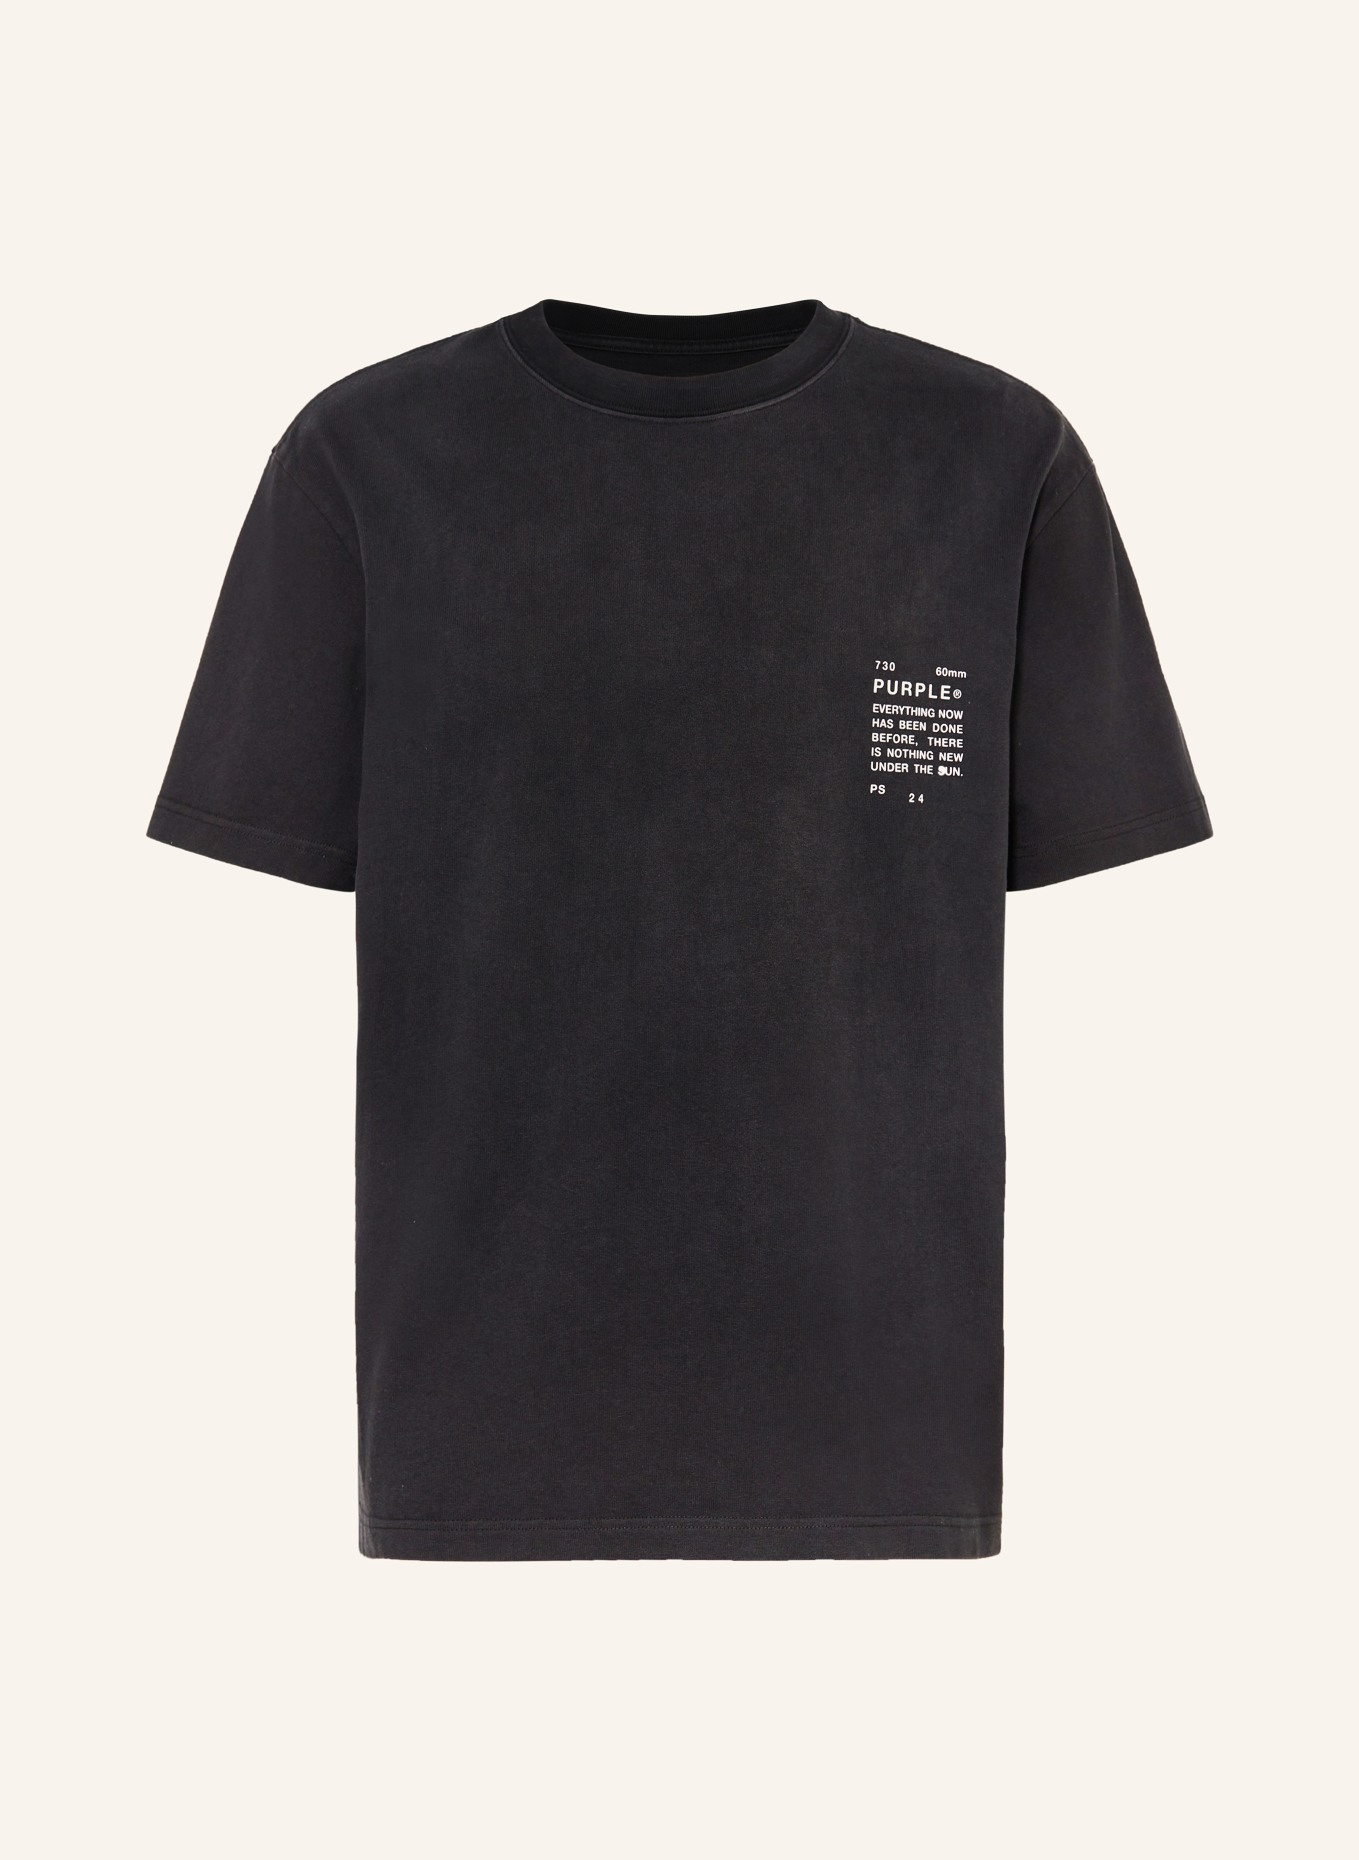 PURPLE BRAND T-shirt, Color: BLACK (Image 1)